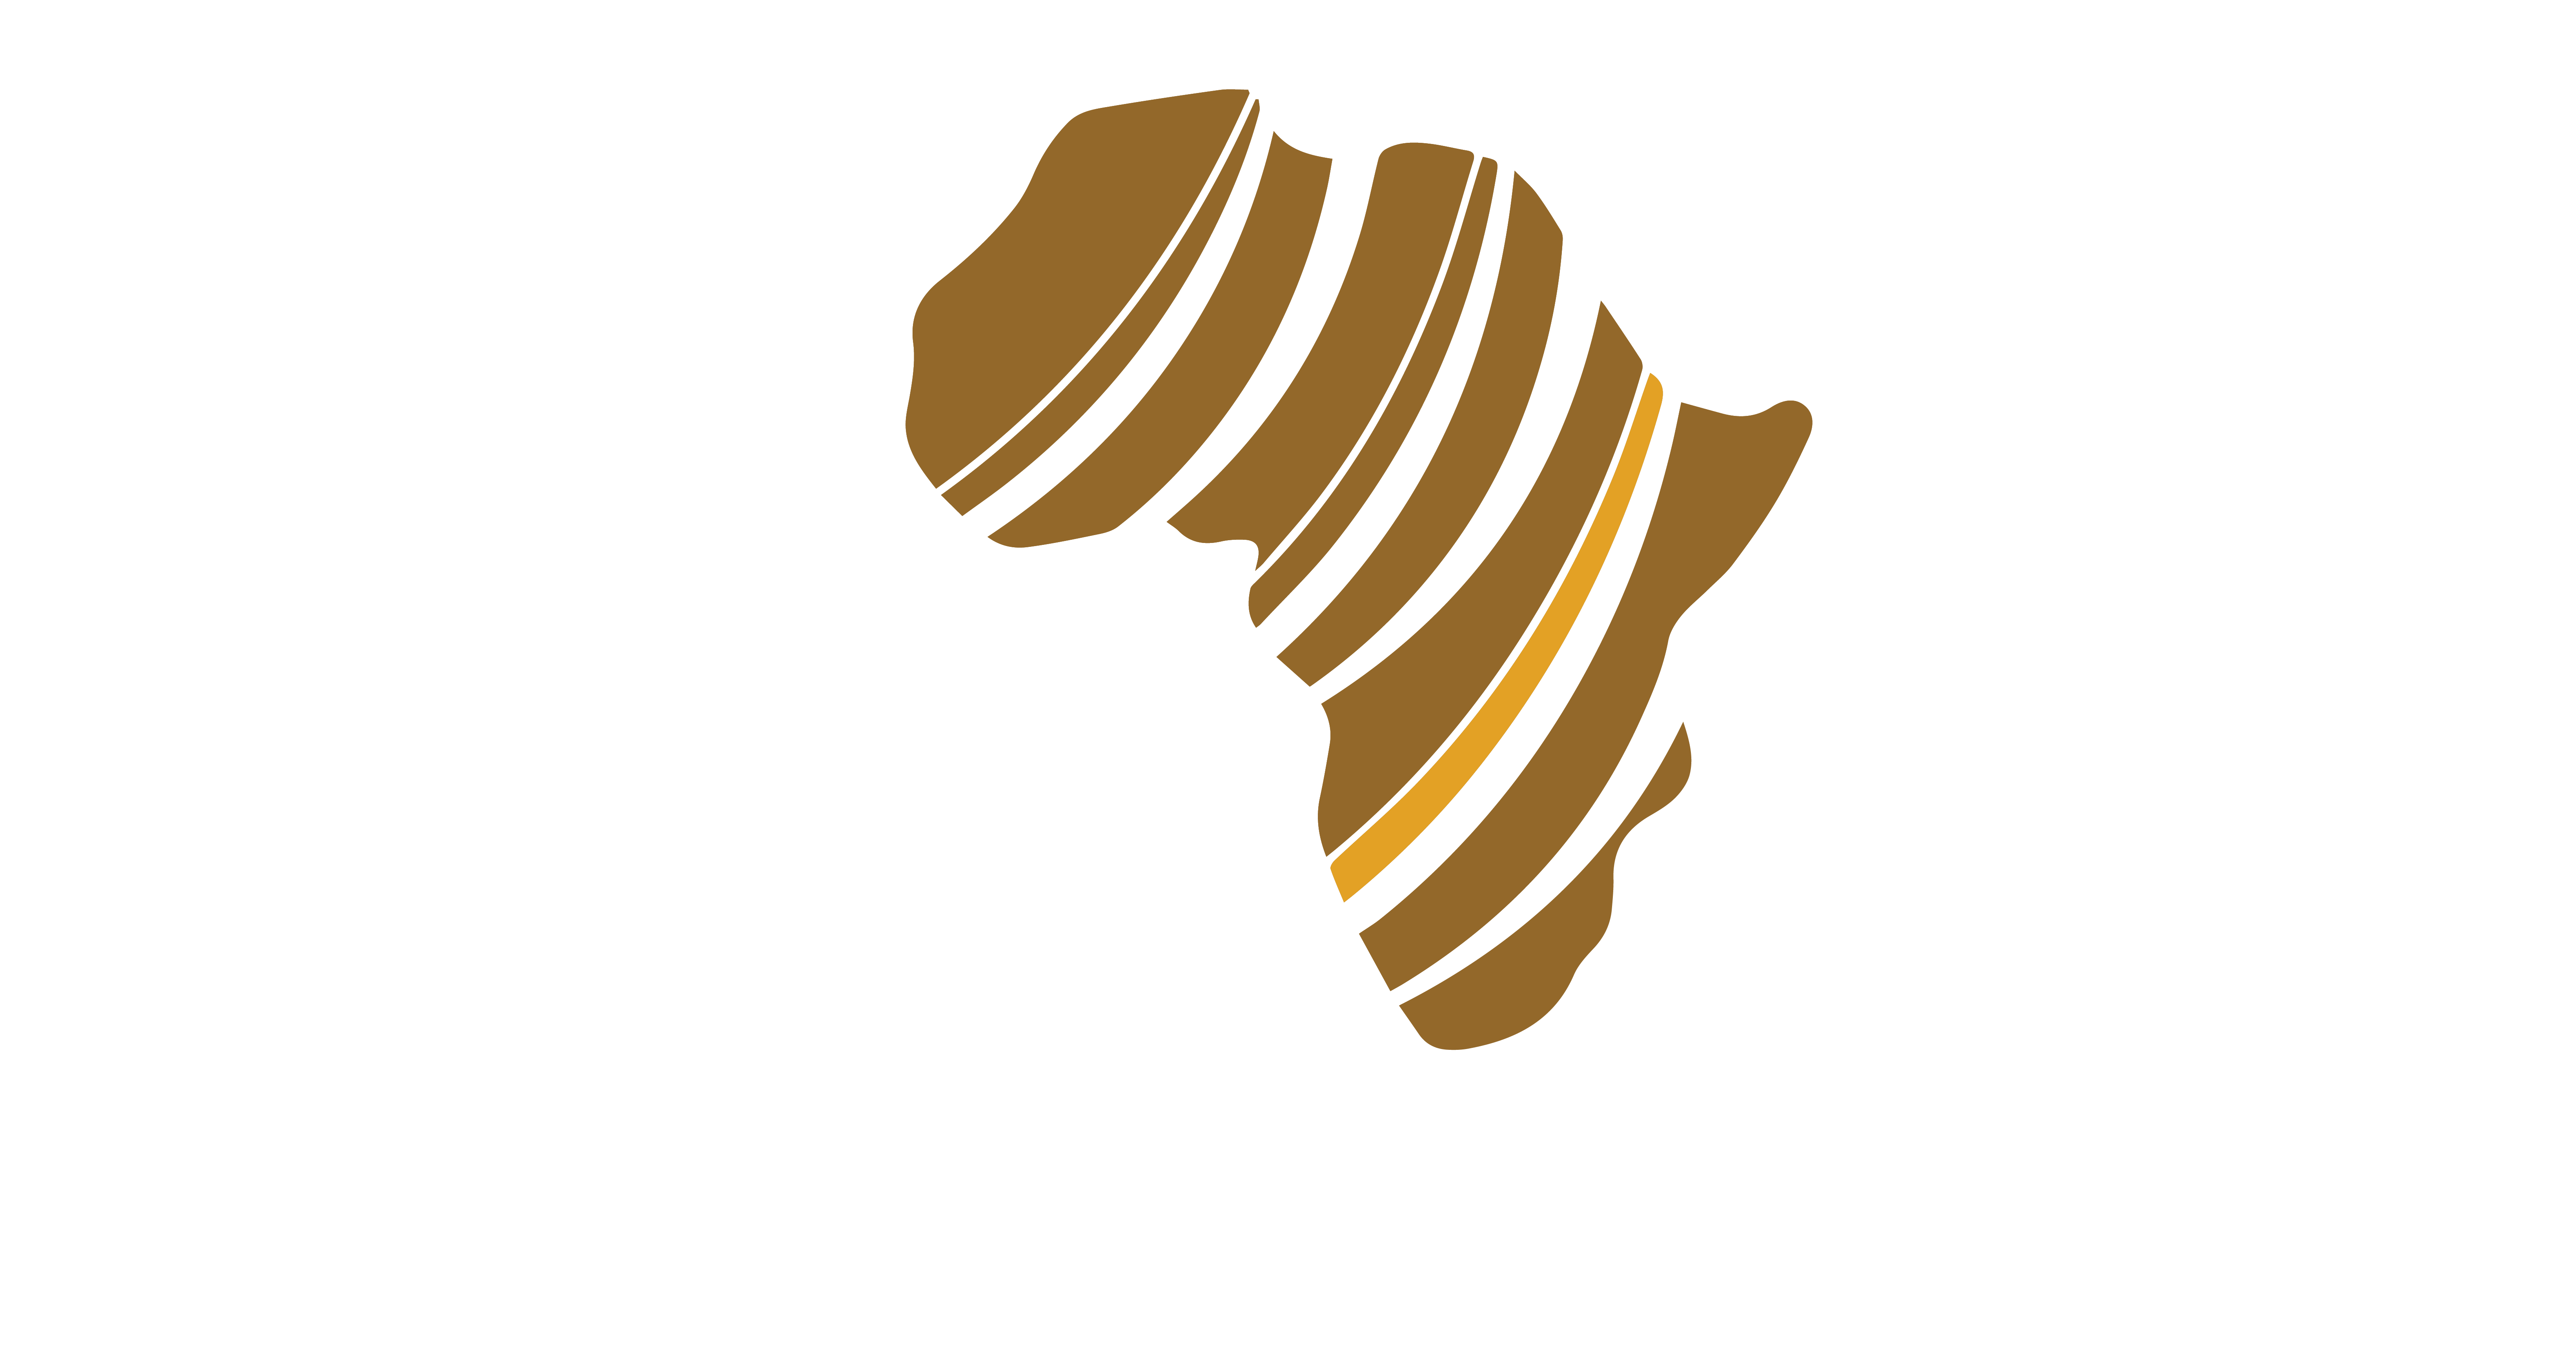 Explore Africa